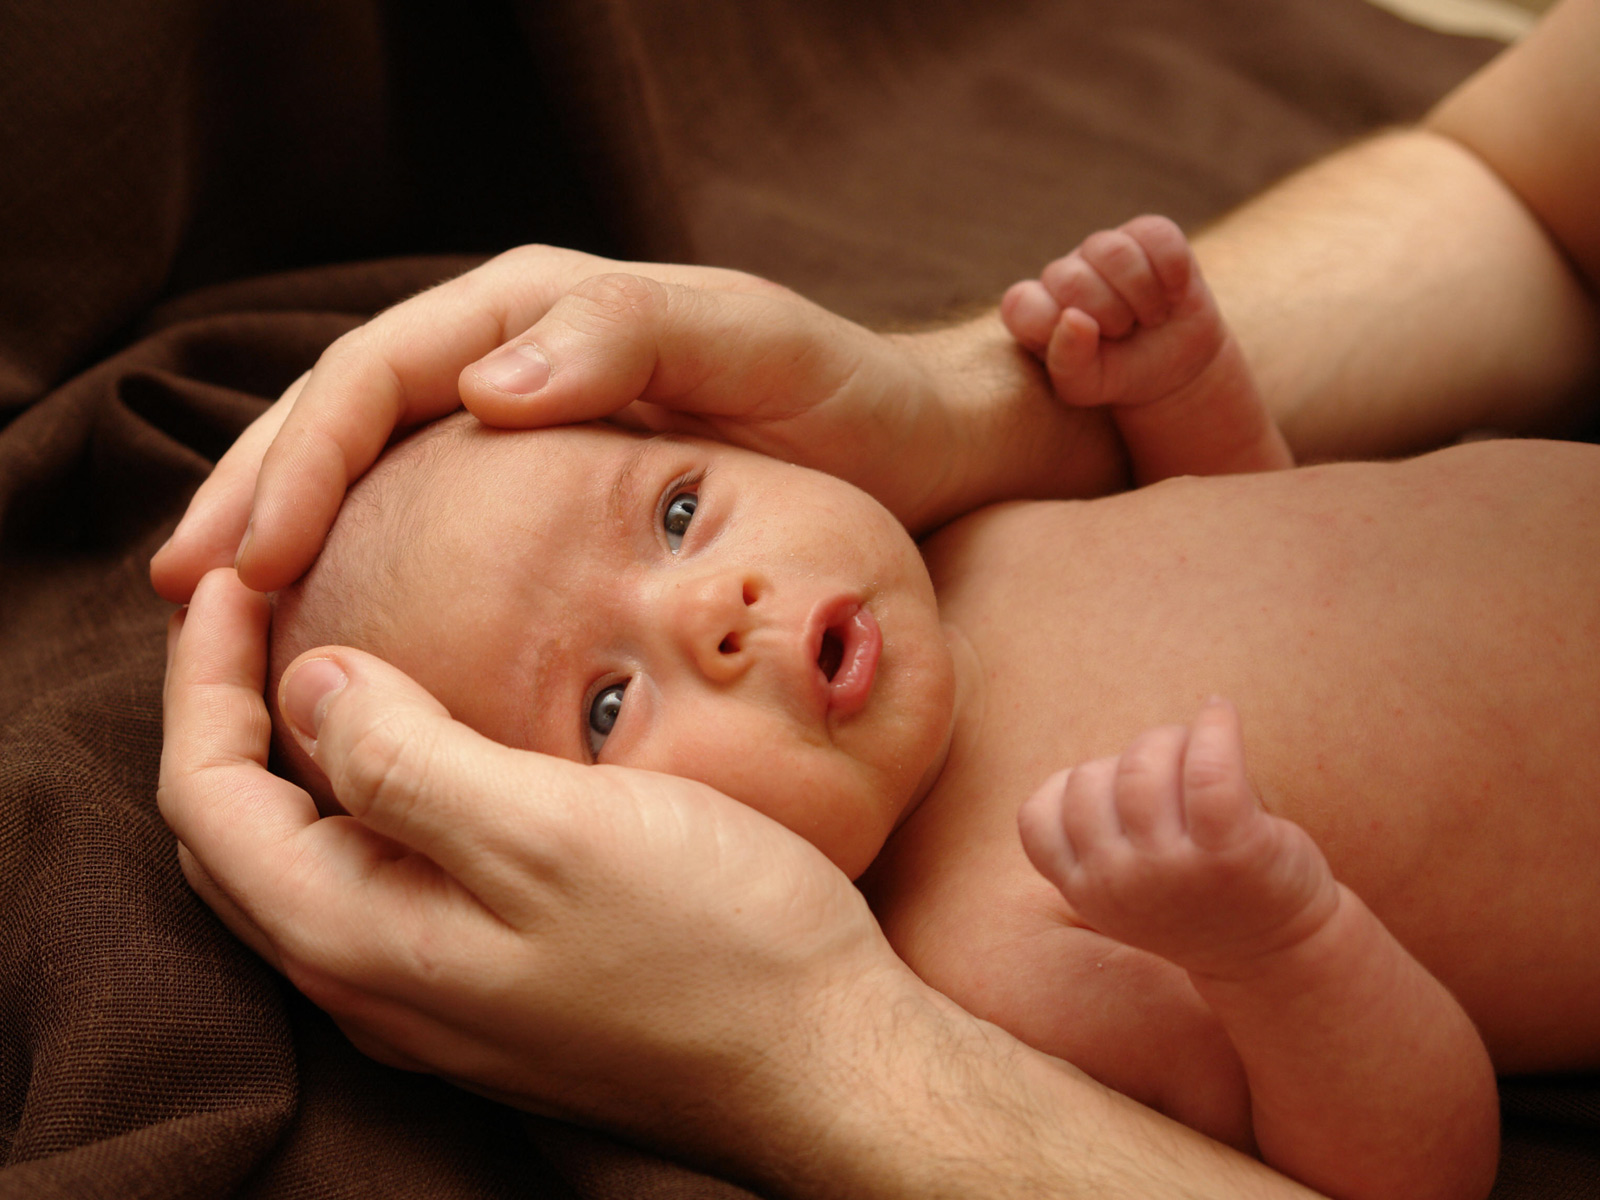 Fetuste Kafanın Küçük Olması Durumu (Mikrosefali)